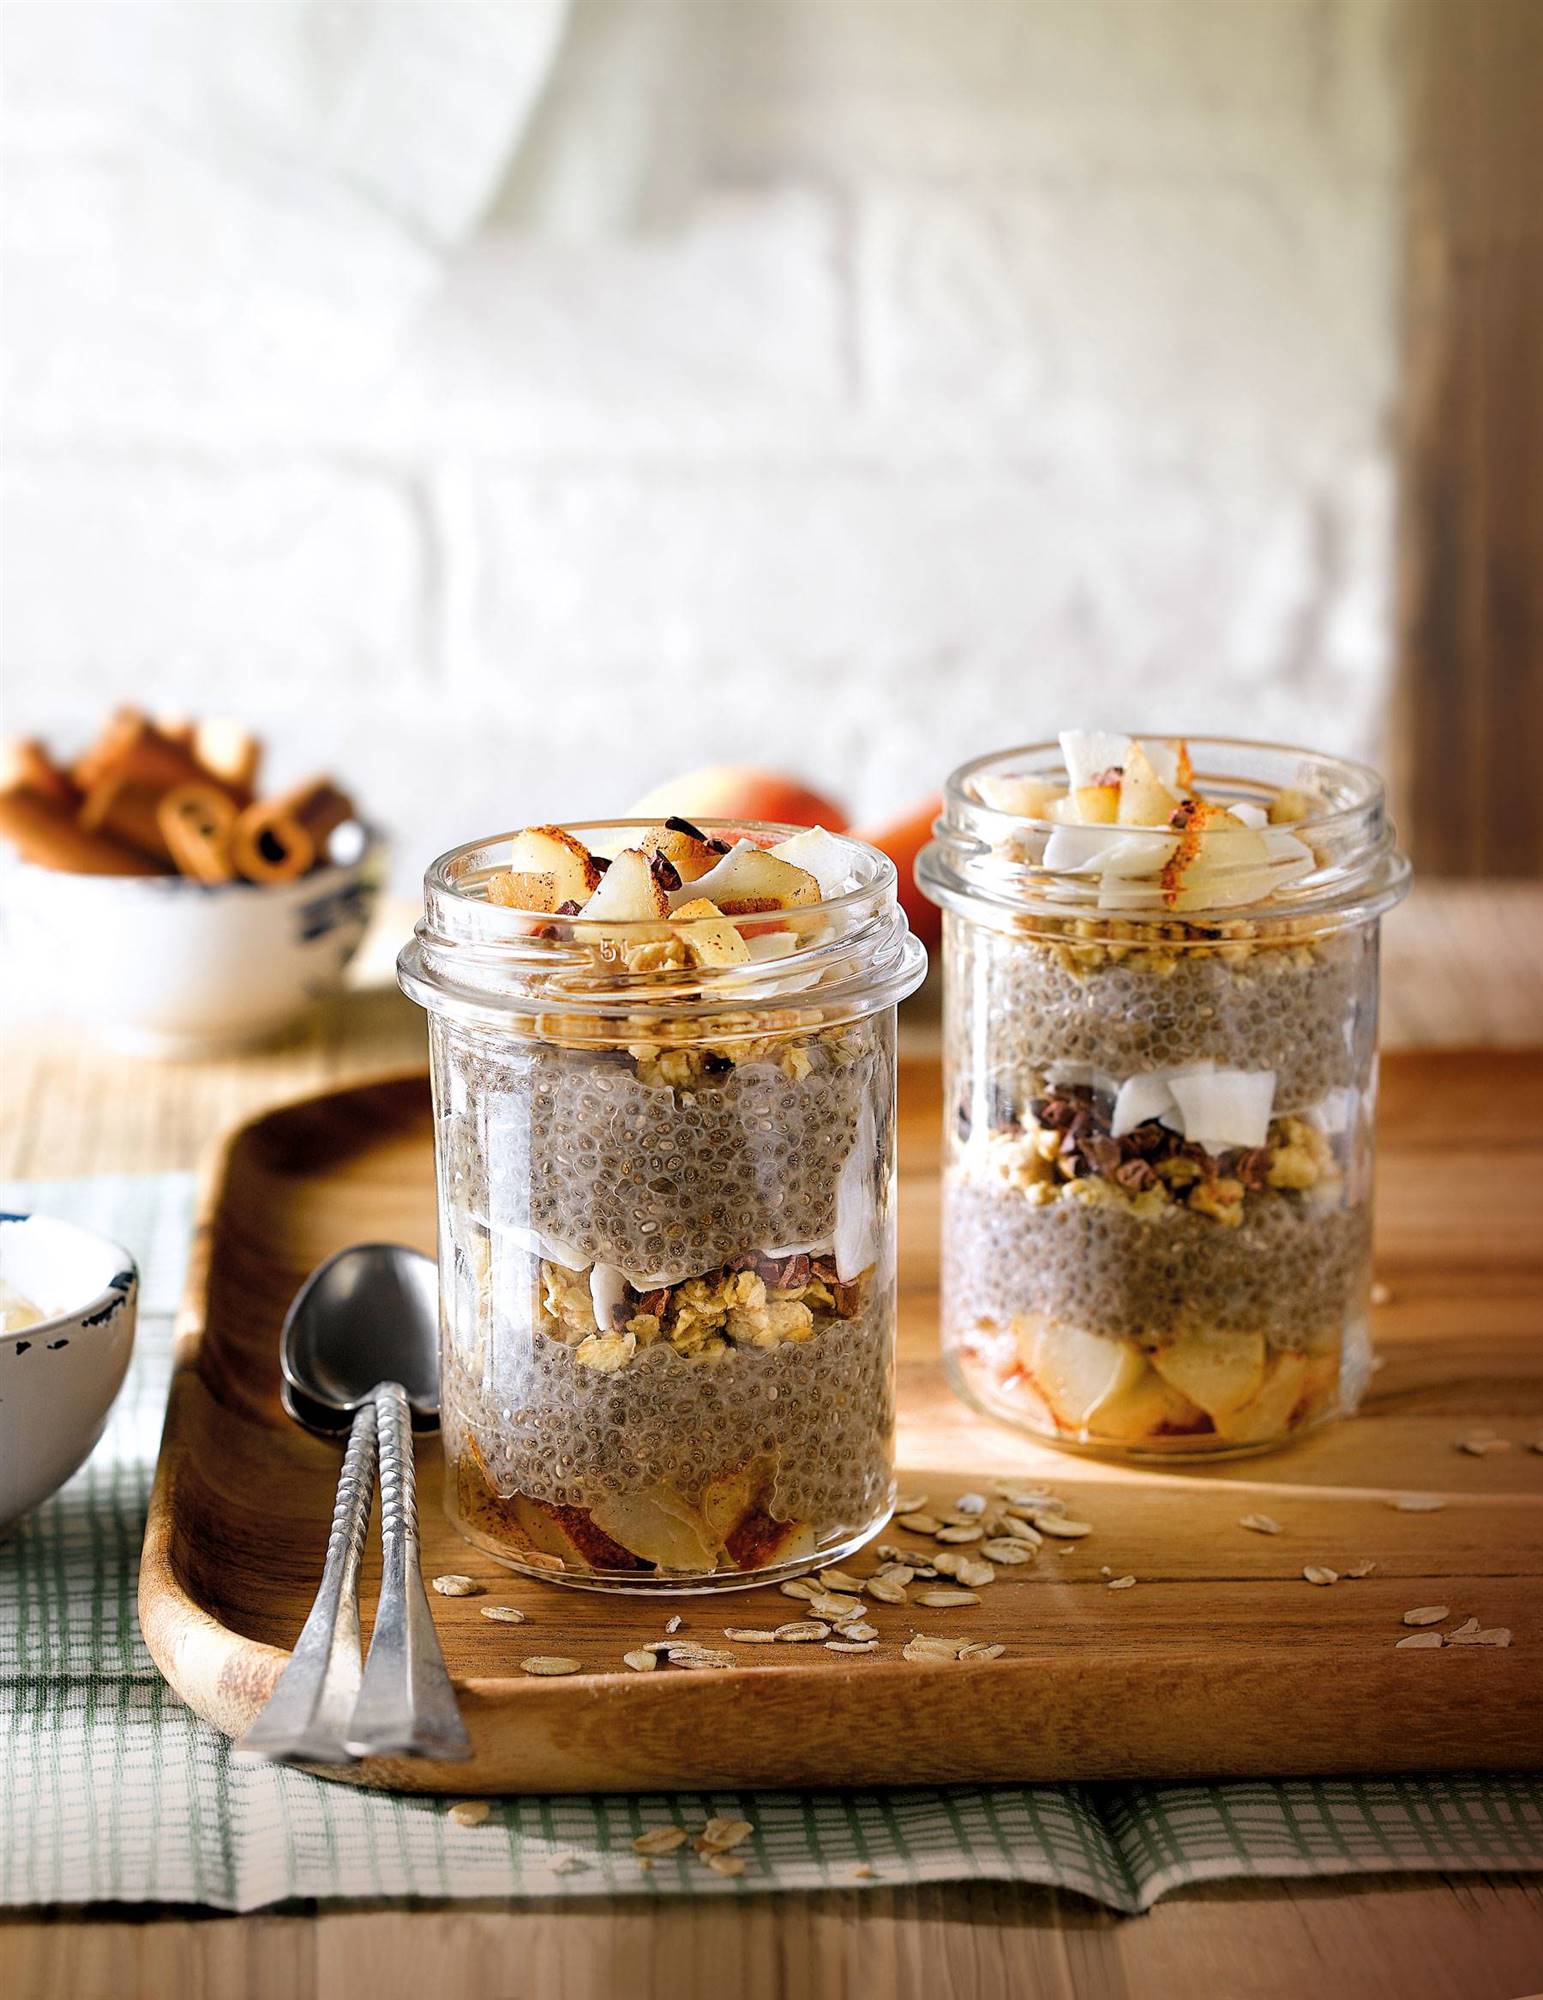 Desayunos saludables: receta de puding de semillas de chía. 